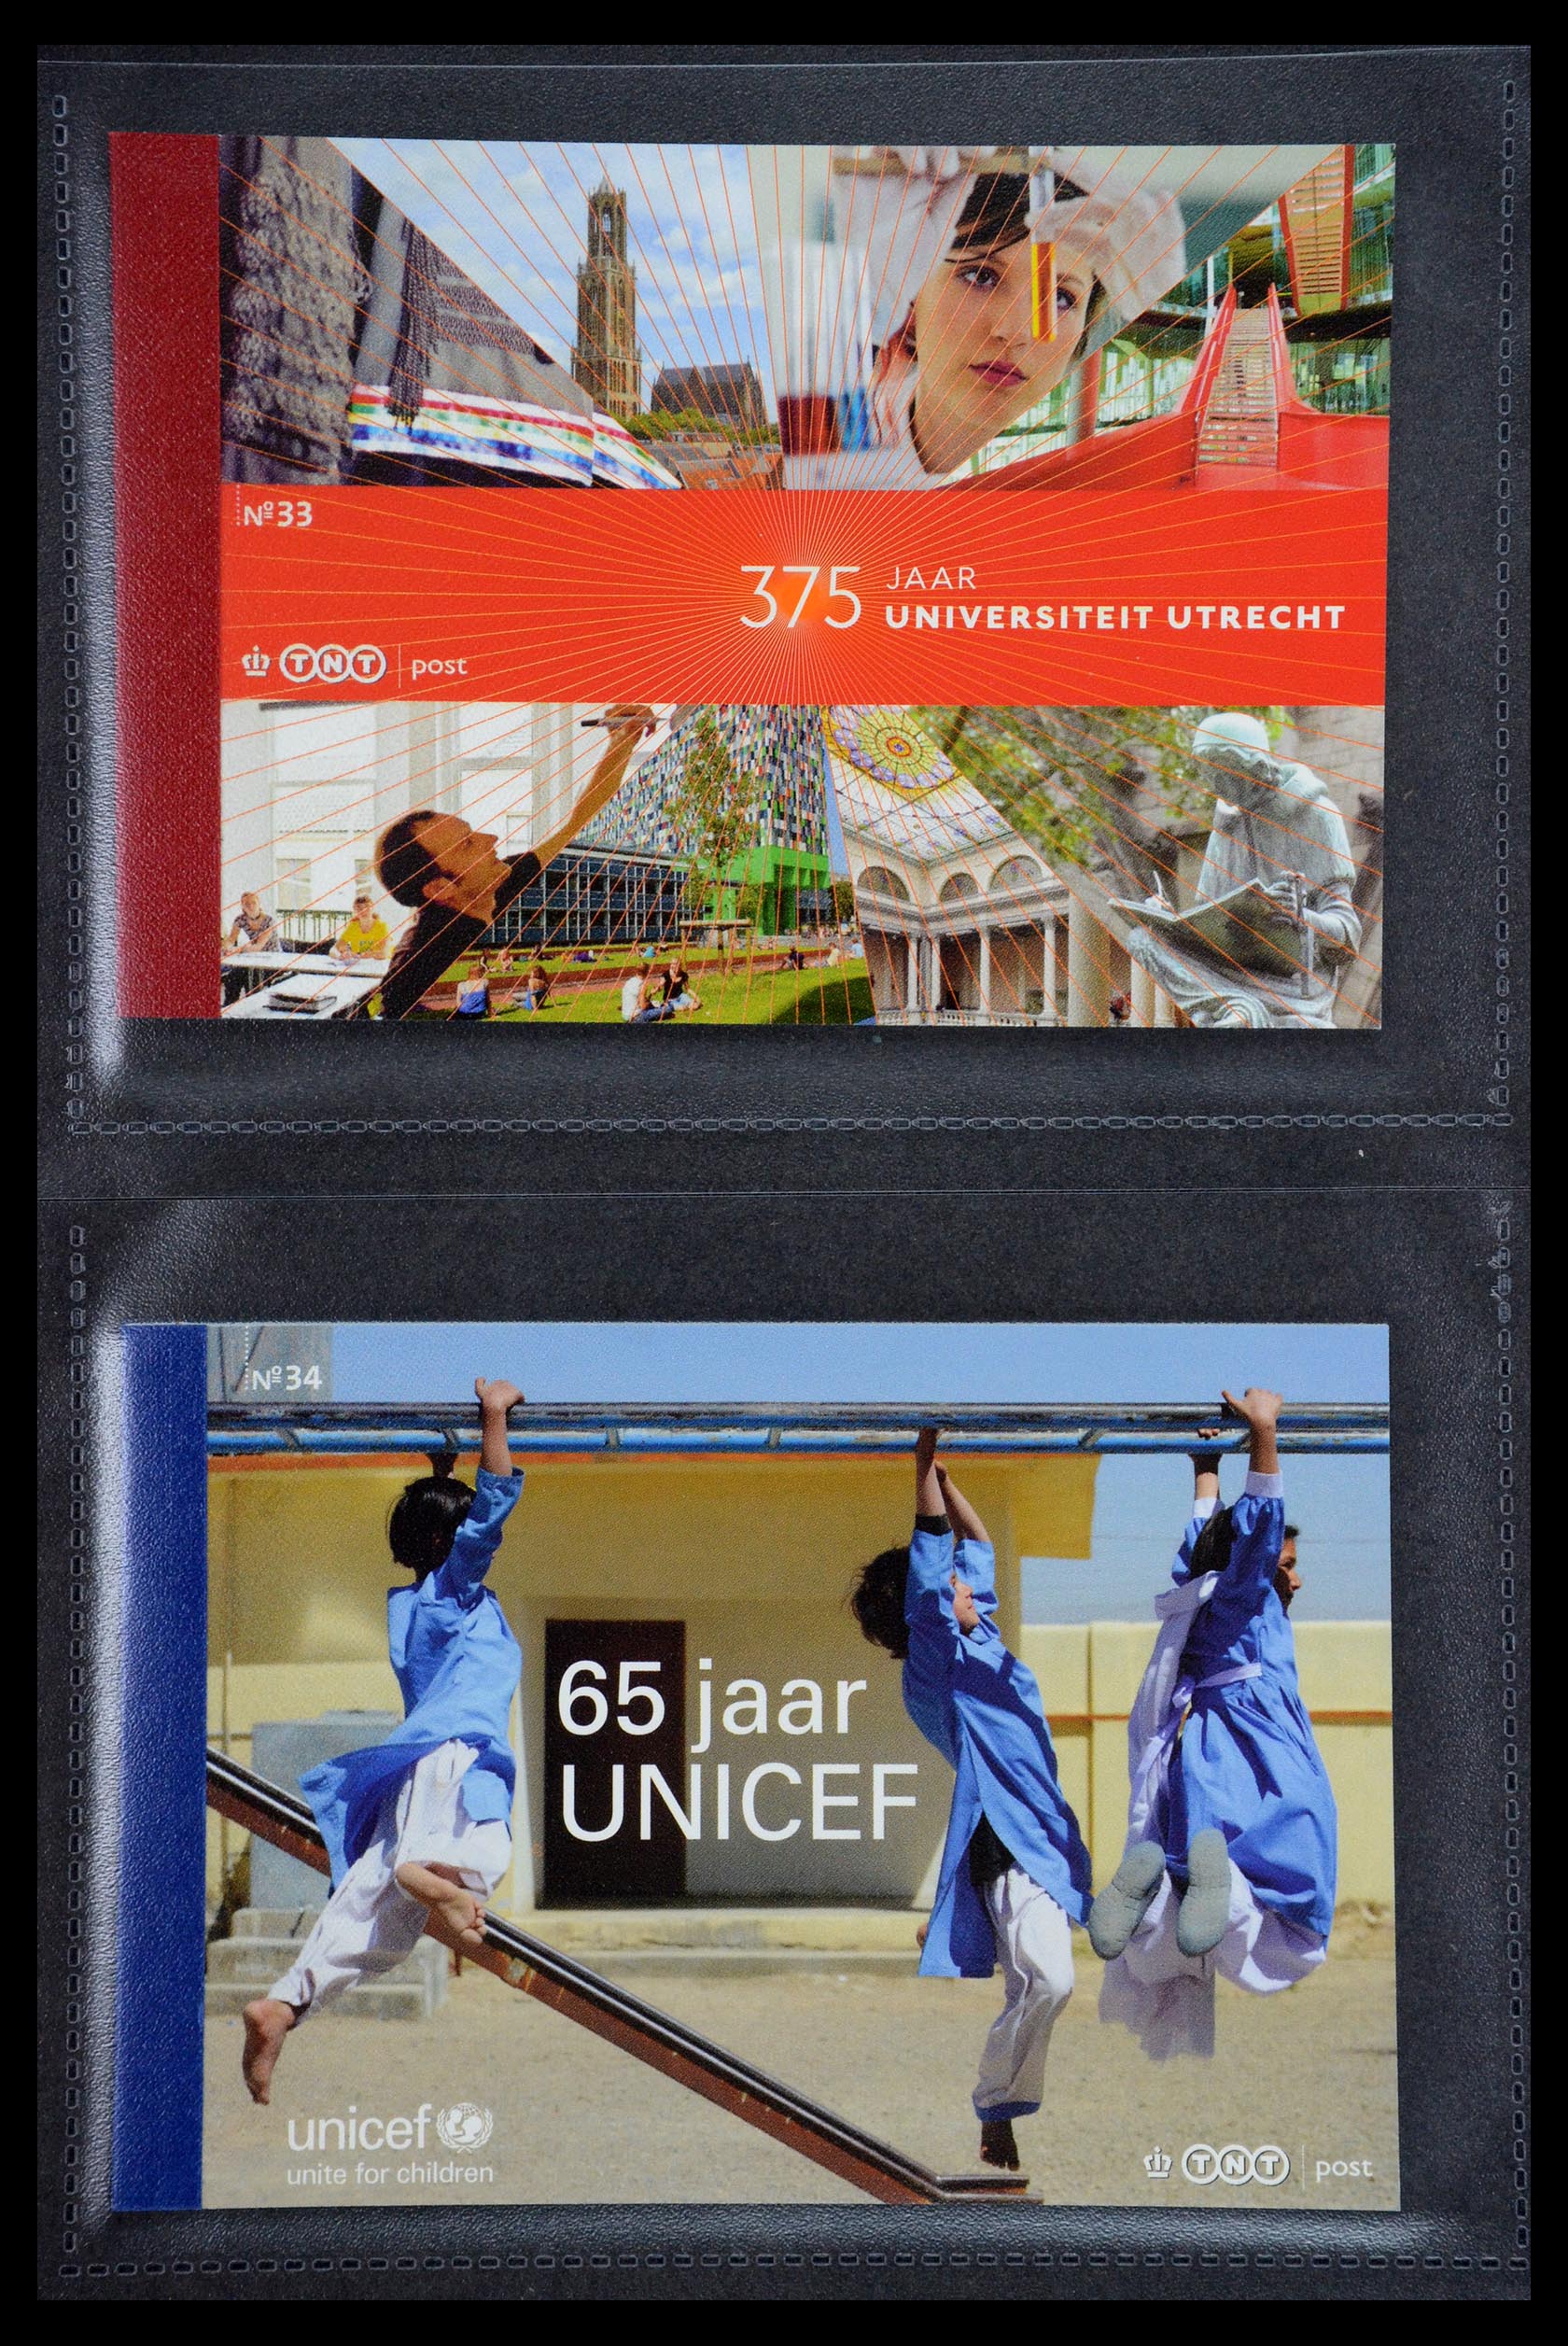 35945 017 - Stamp Collection 35945 Netherlands prestige booklets 2013-2019.